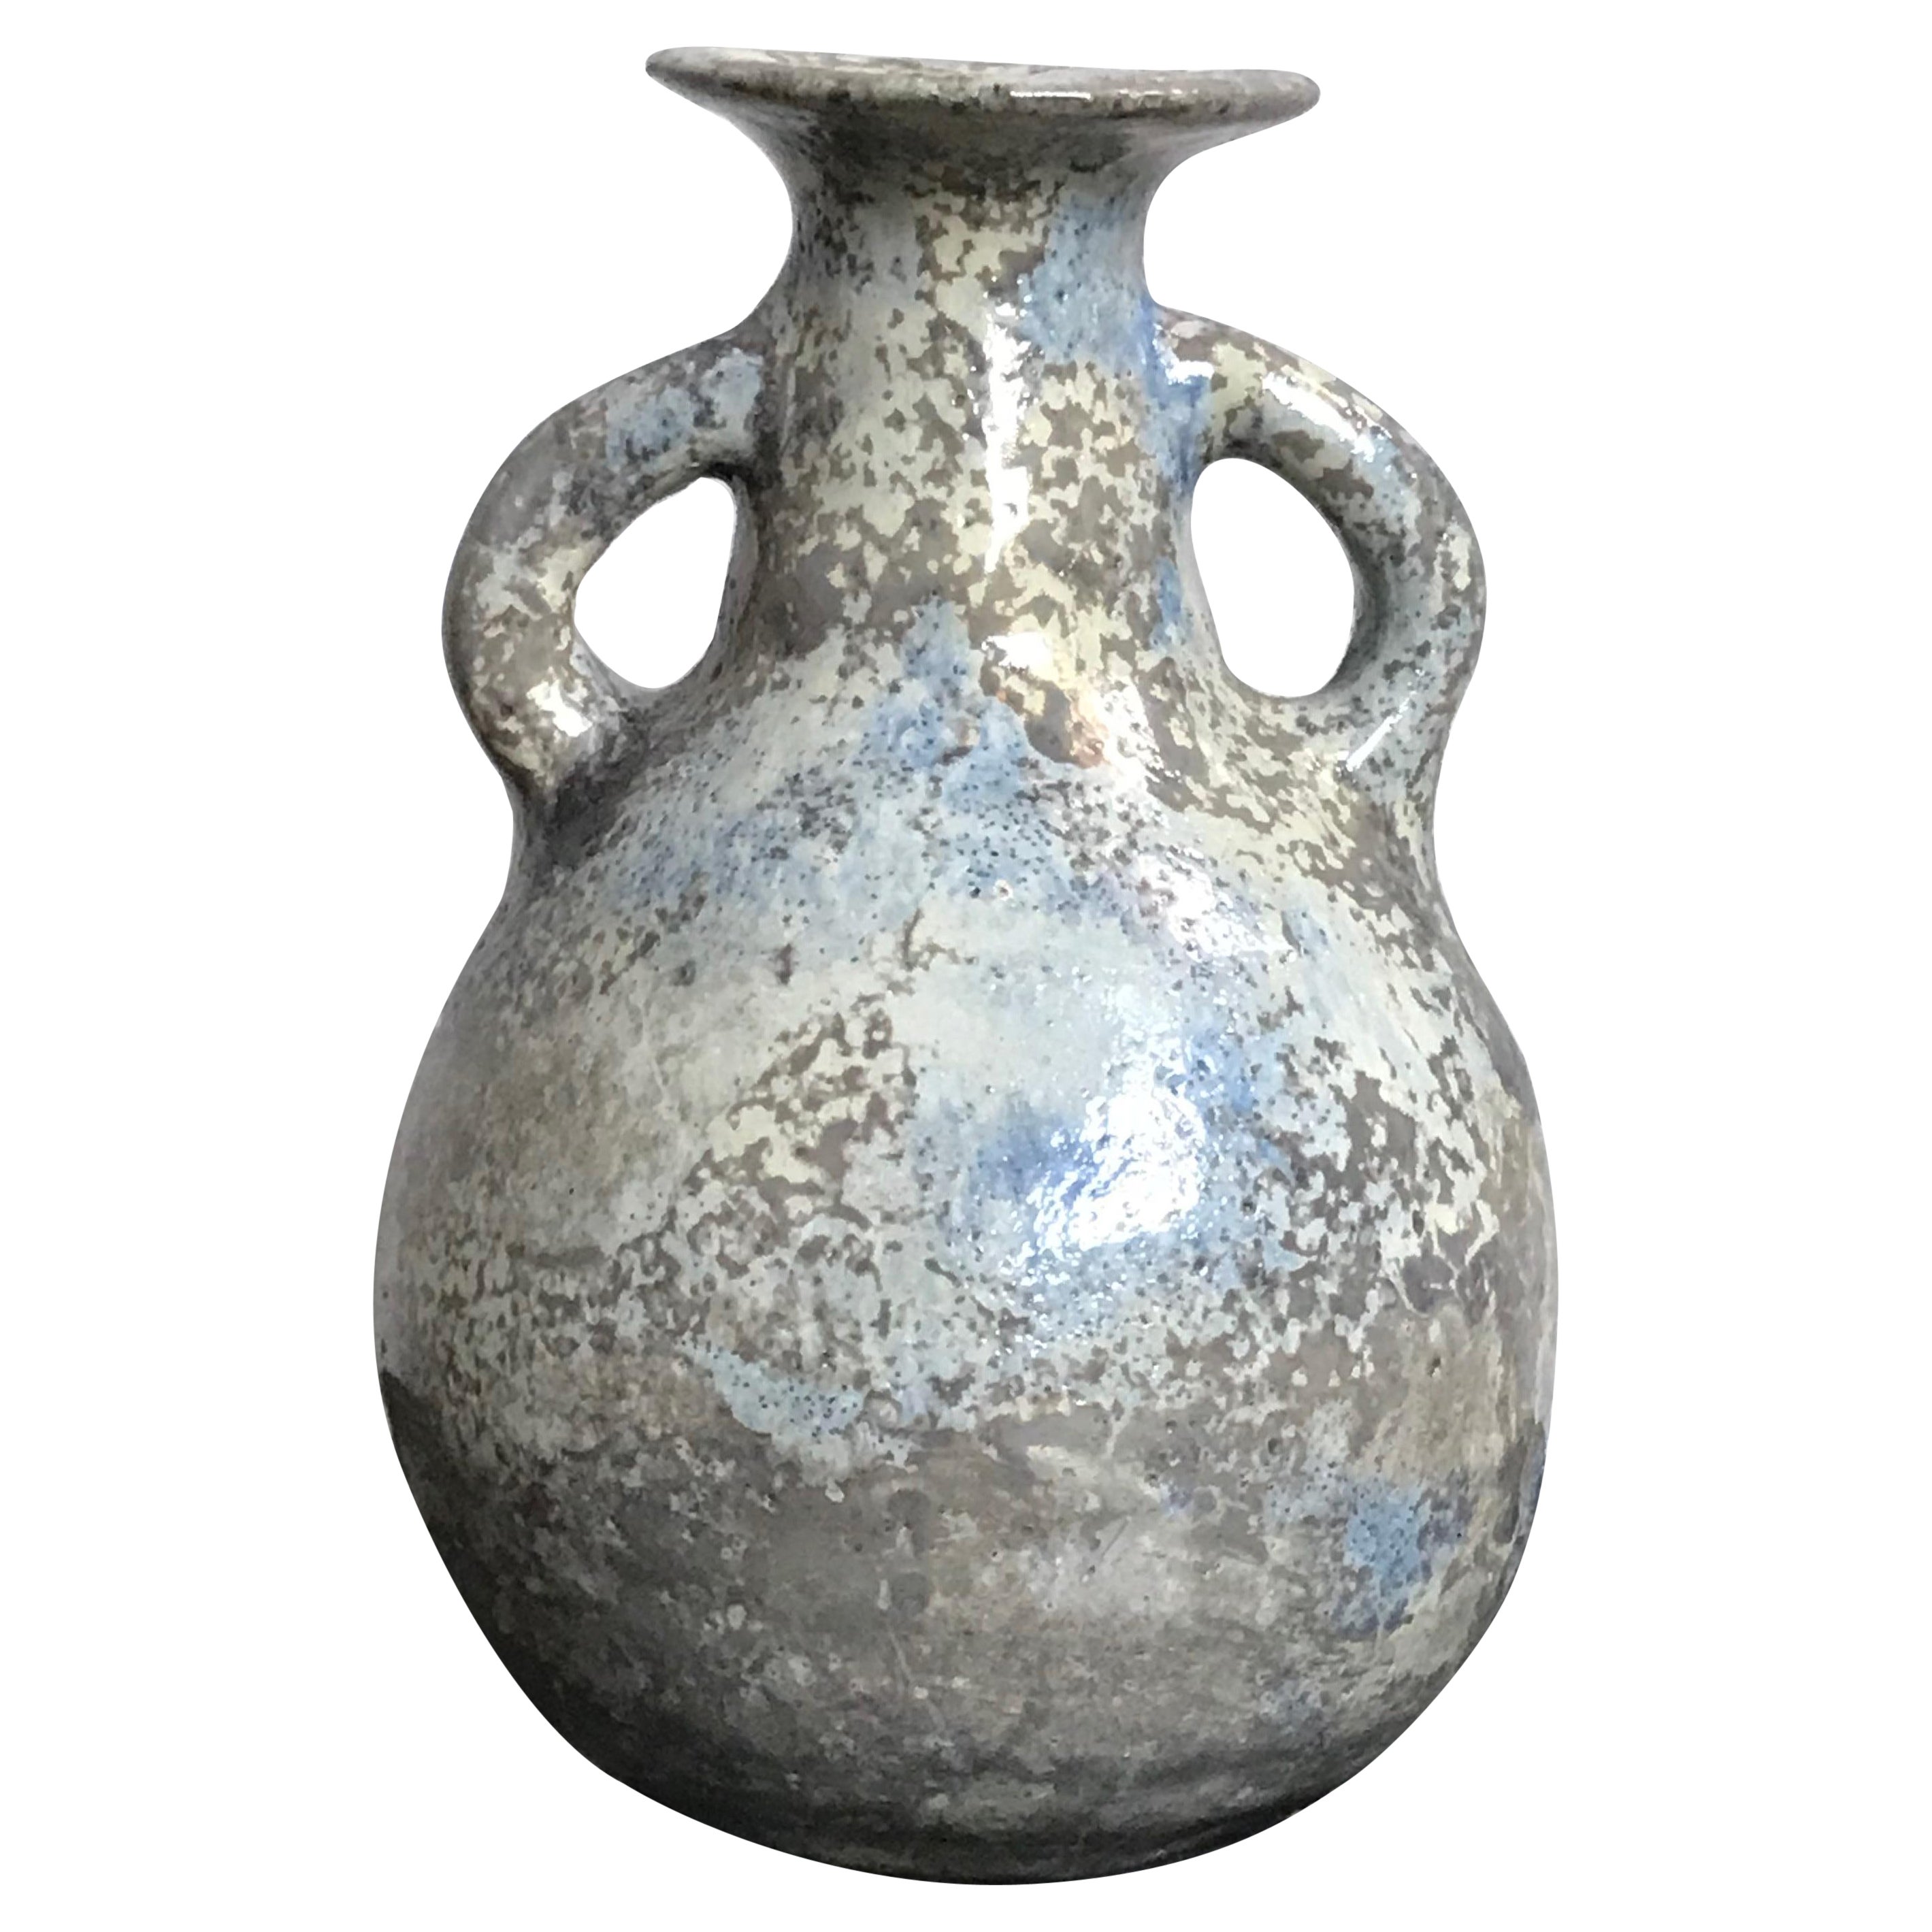  Studio Pottery Vase Weed Beatrice Wood  en vente